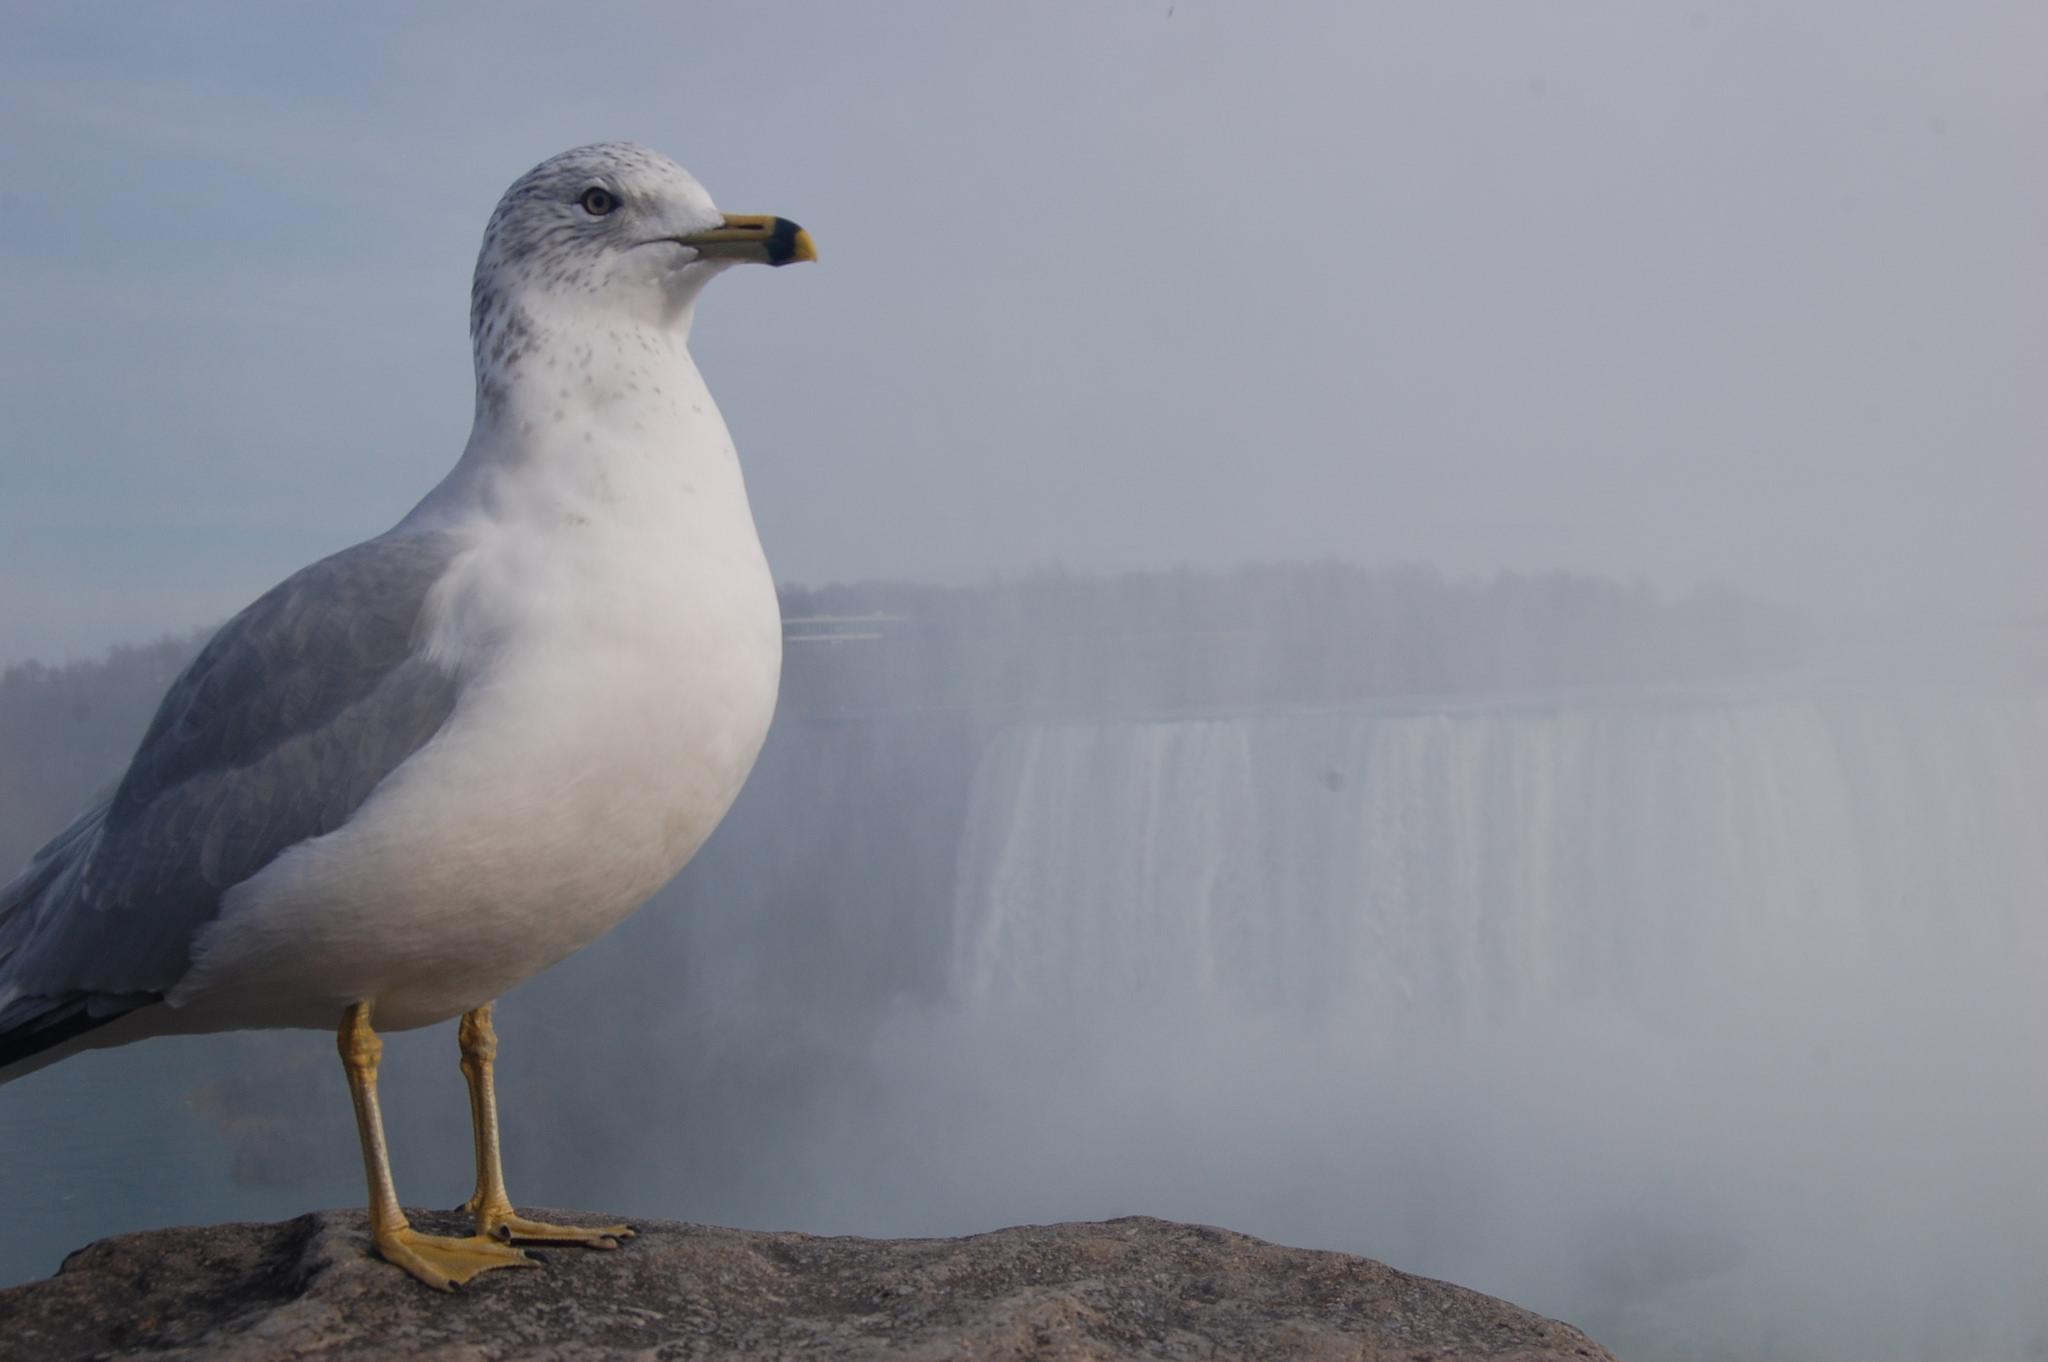 unflappable seagull at Niagara Falls